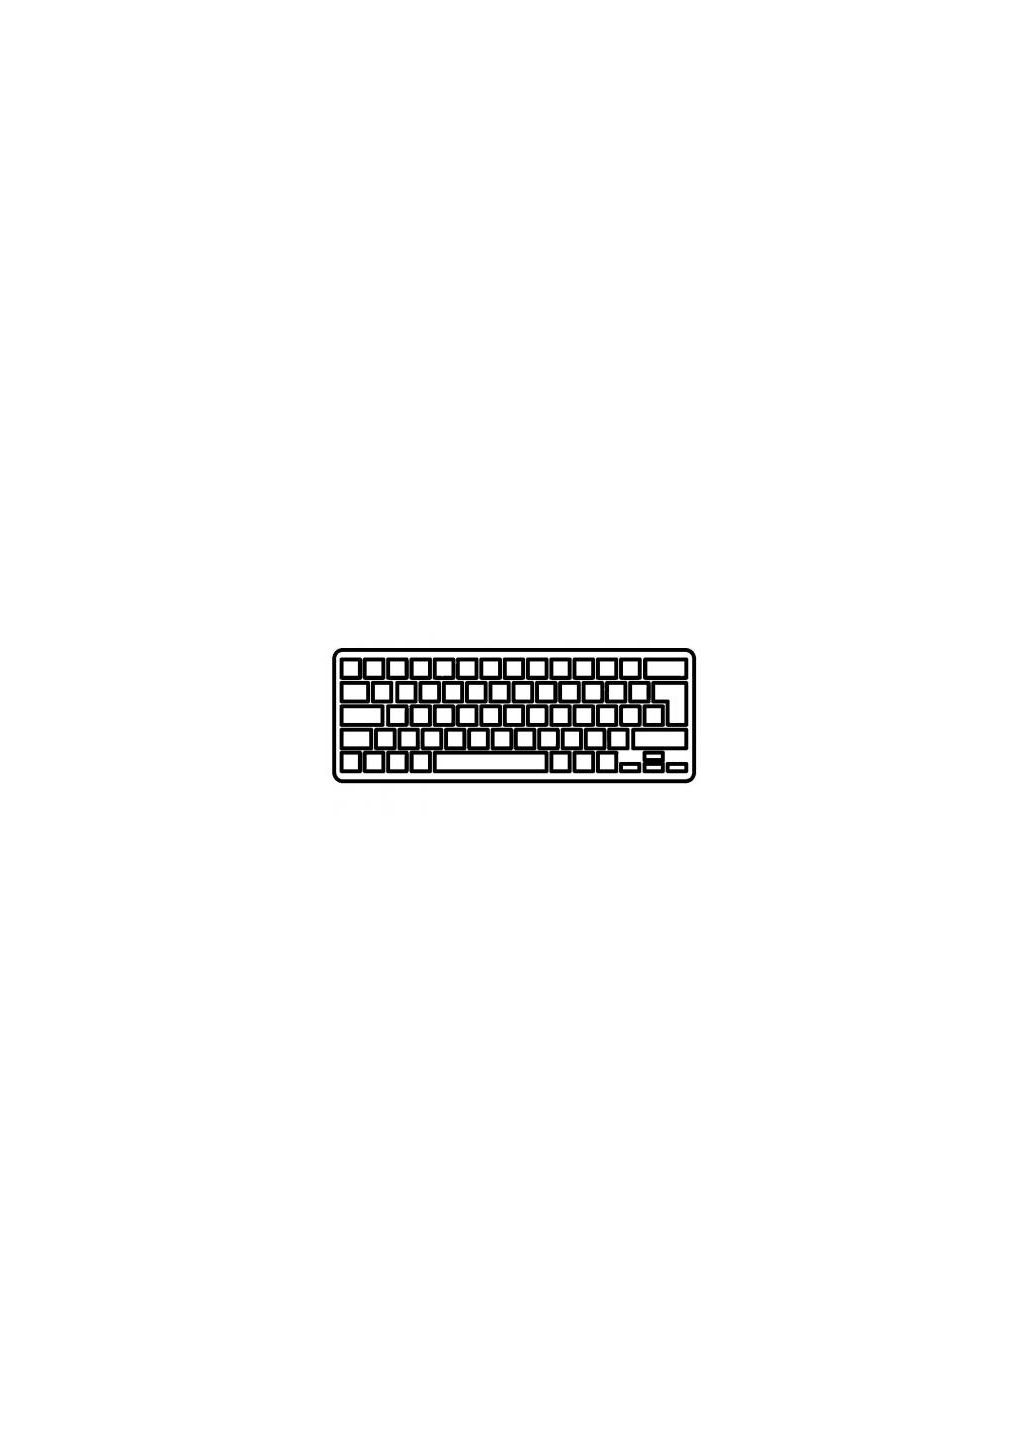 Клавиатура ноутбука Aspire V5531/V5-551/V5-571 черная без рамки RU (A43578) Acer aspire v5-531/v5-551/v5-571 черная без рамки ua (276707562)